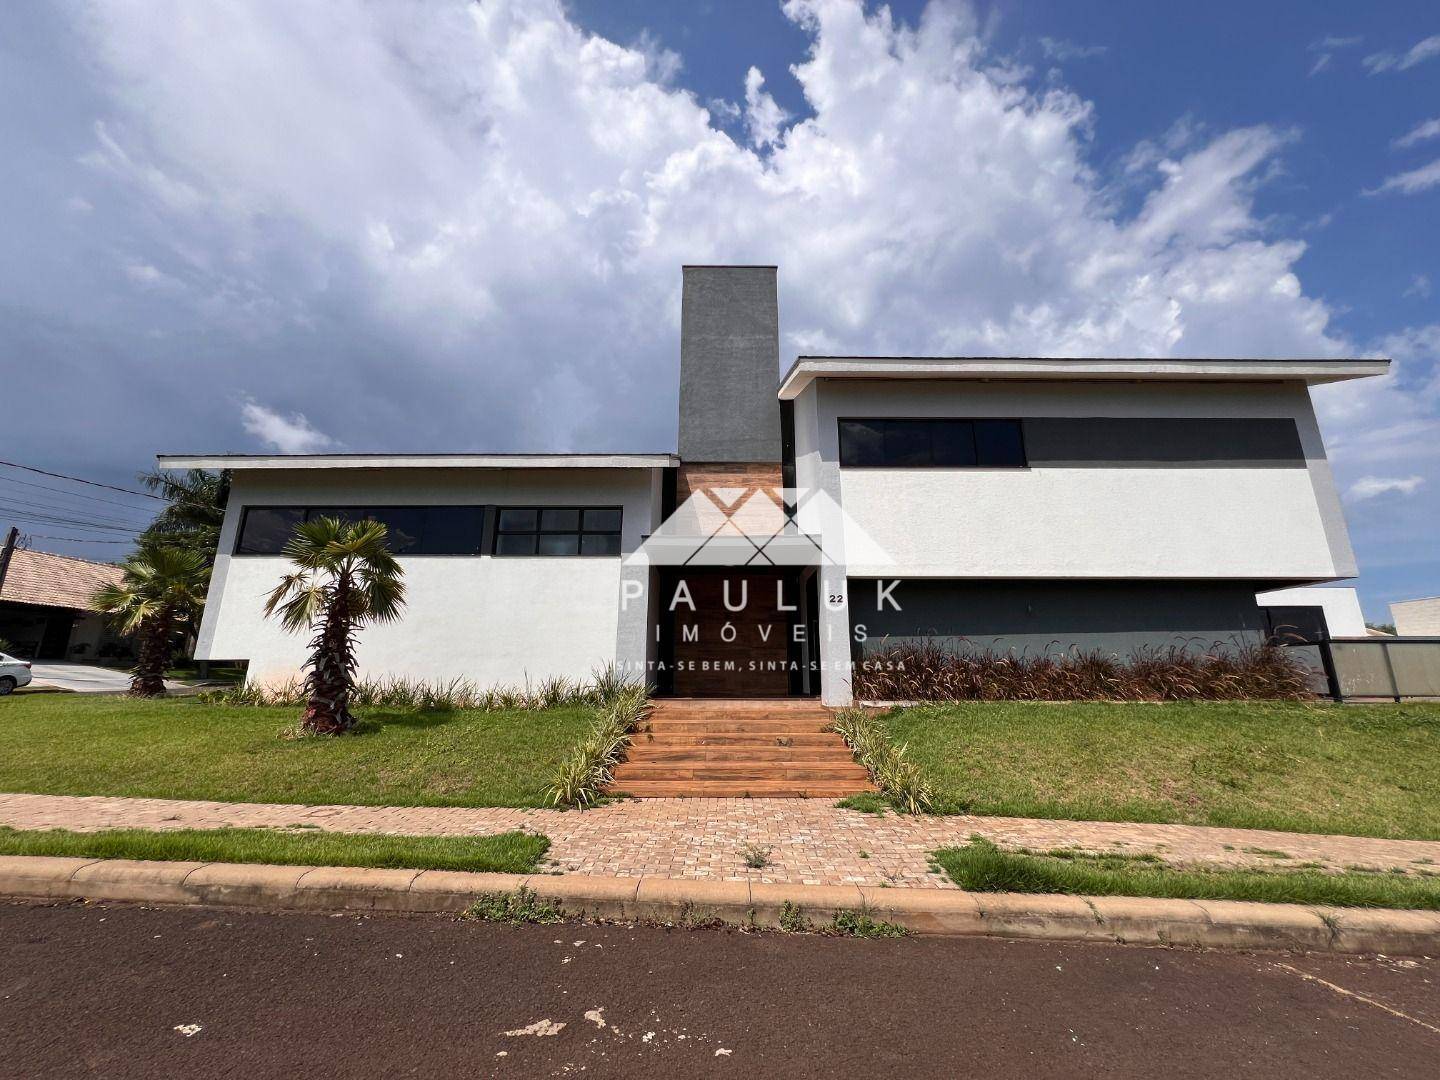 Sobrado com 5 Dormitórios Sendo 4 Suítes à venda Por R$ 2.600.000 - Condomínio Residencial Central P | PAULUK IMÓVEIS | Portal OBusca